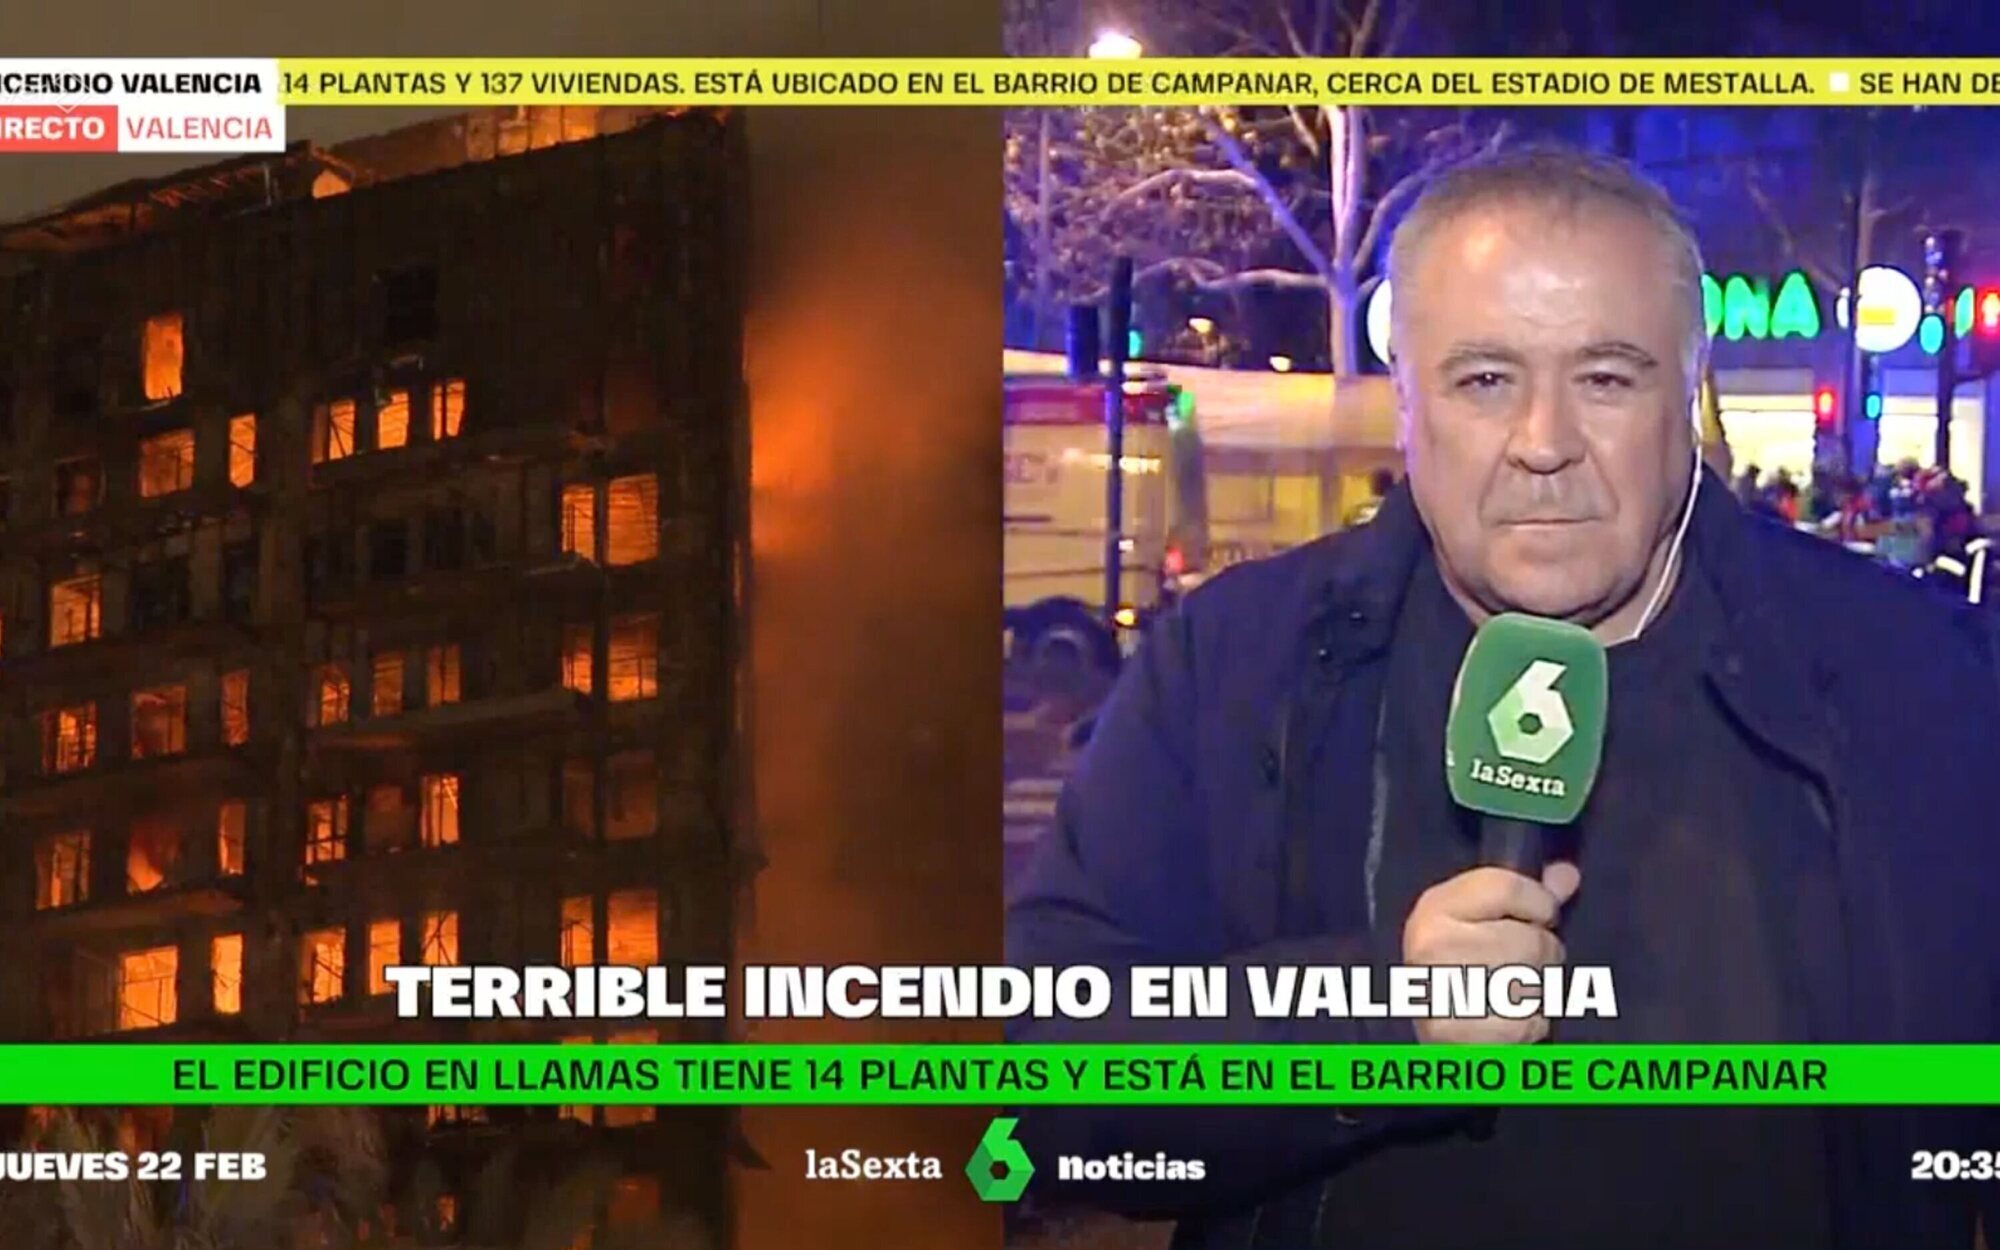 Antonio García Ferreras salta al prime time de laSexta como reportero para cubrir el incendio de Valencia